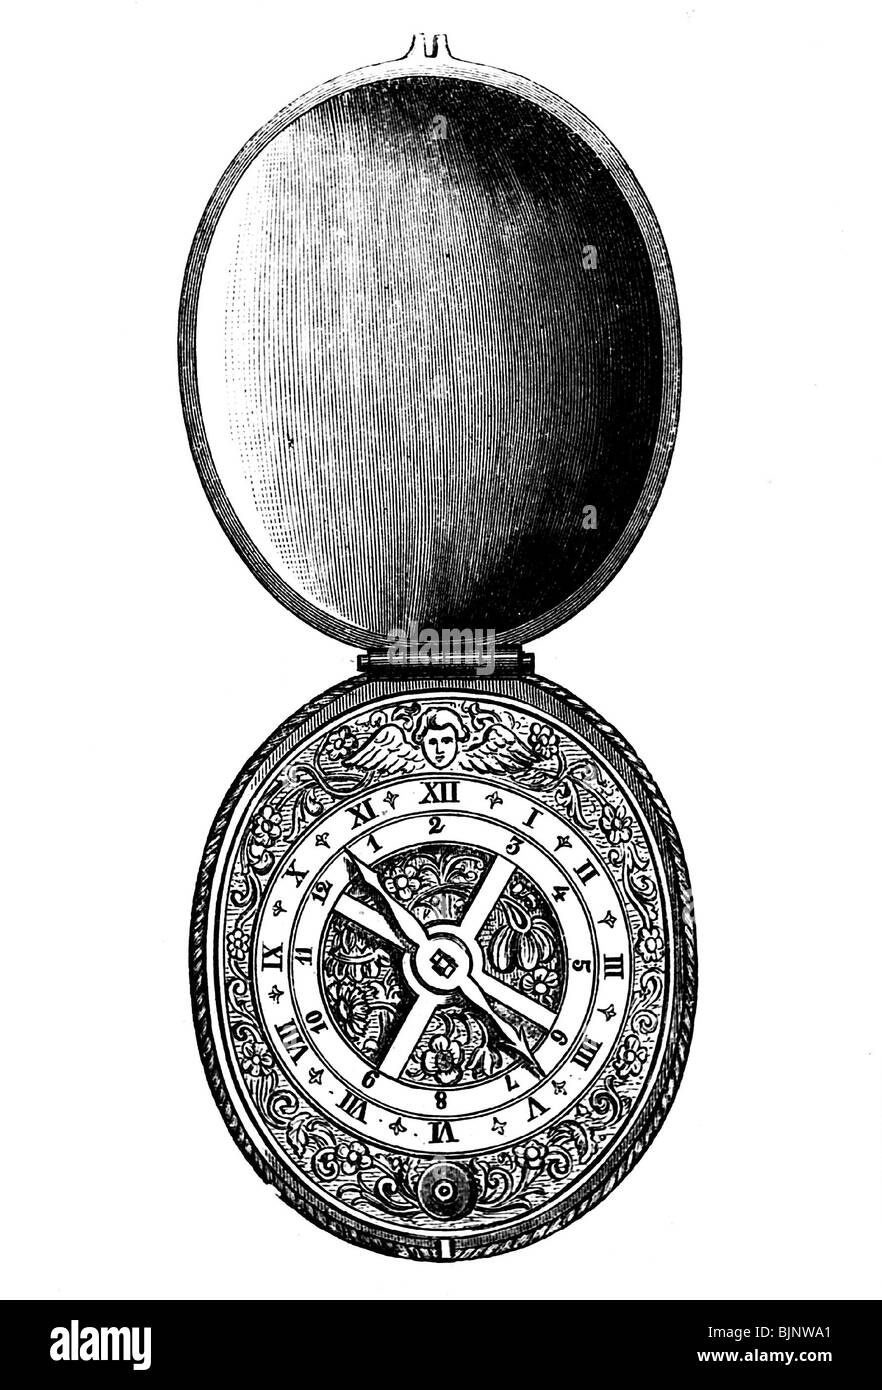 Relojes / relojes, reloj de bolsillo, siglo XVI, el en madera, histórico, histórico, marcar Fotografía de stock - Alamy